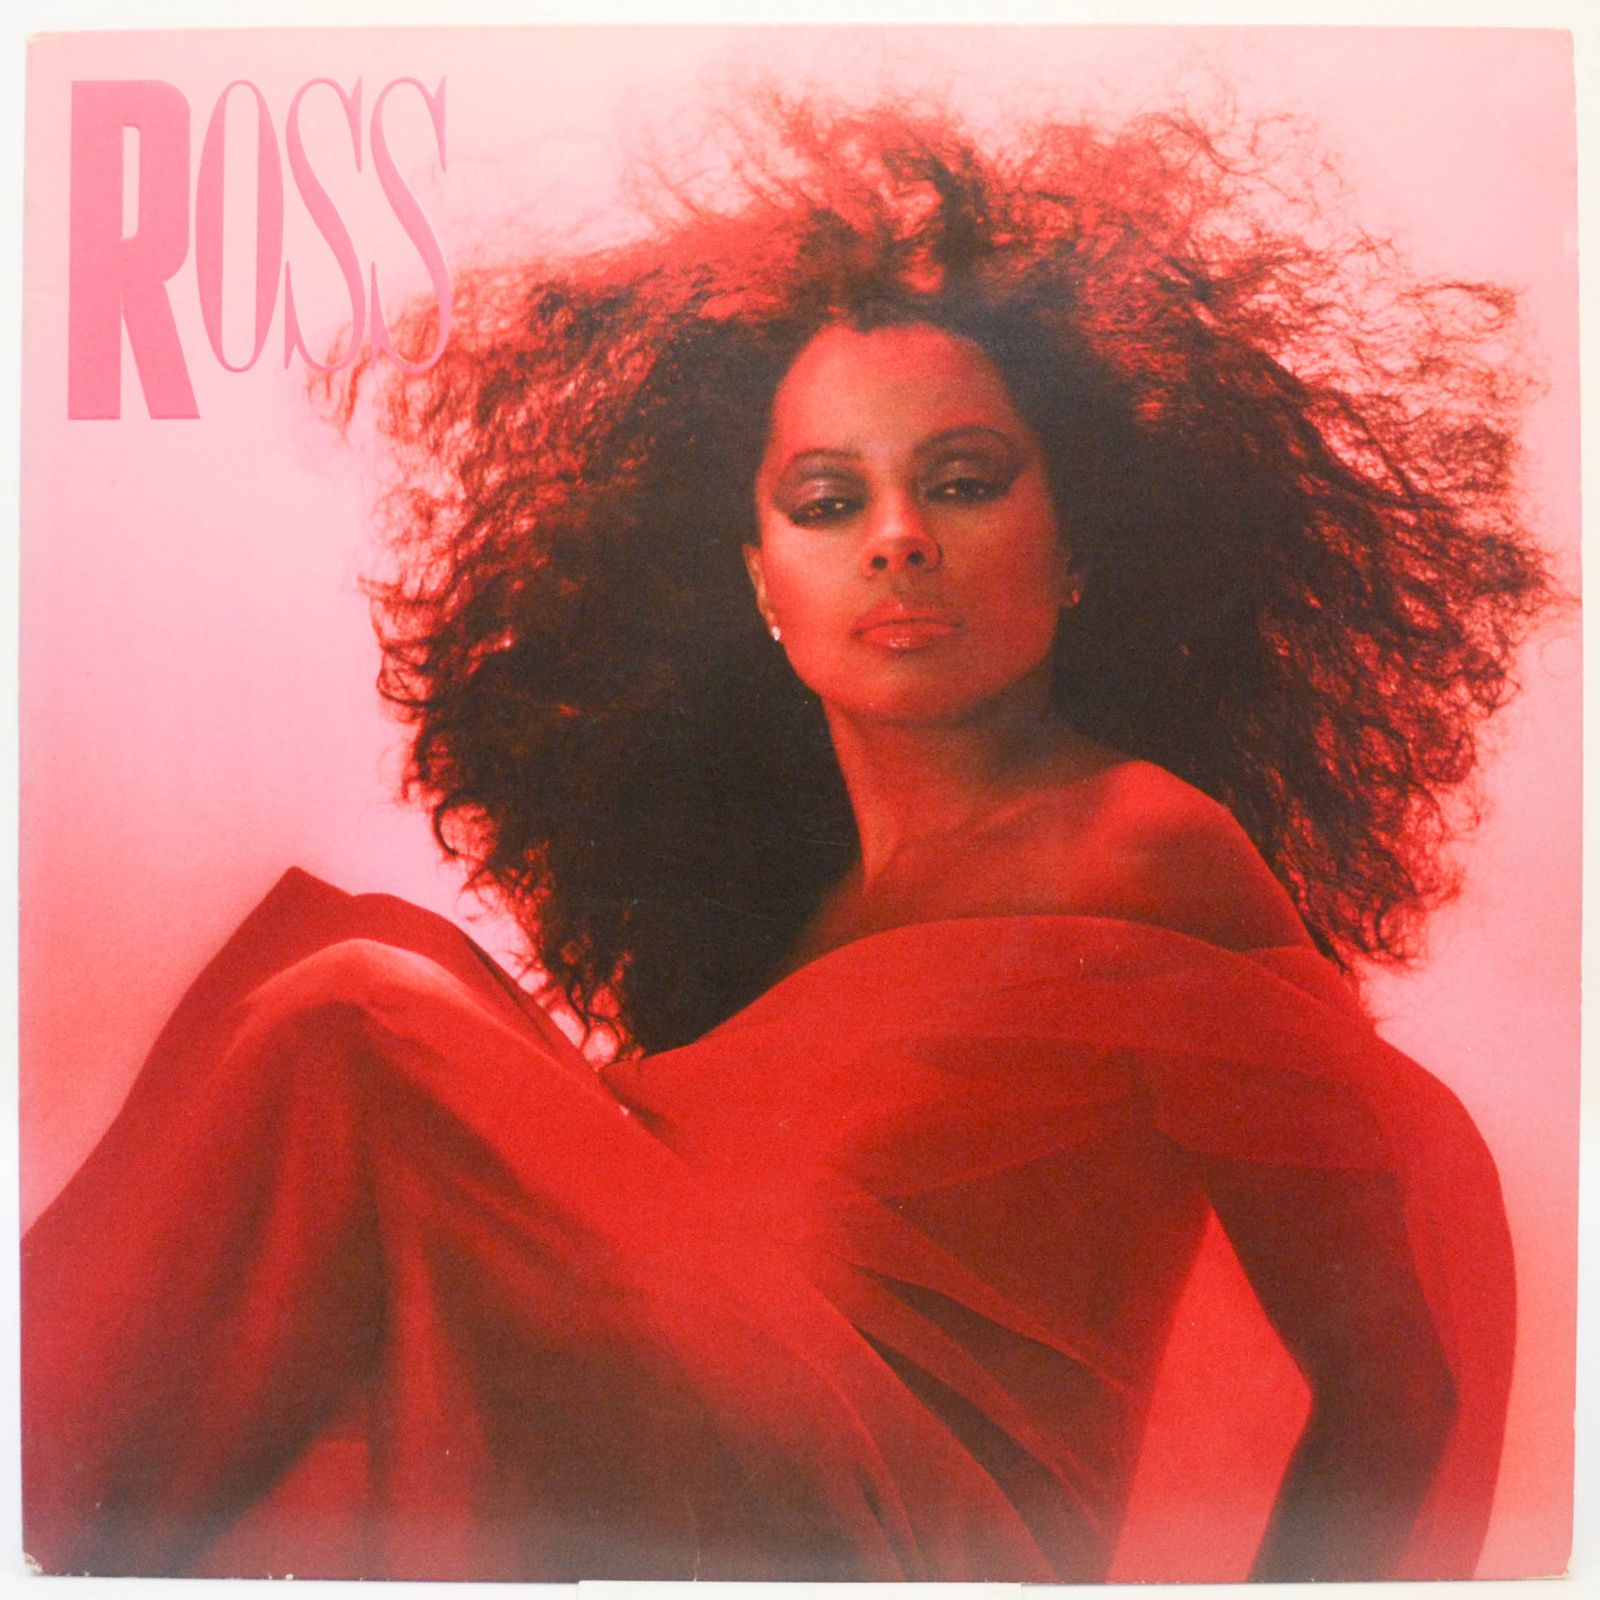 Ross (USA), 1983